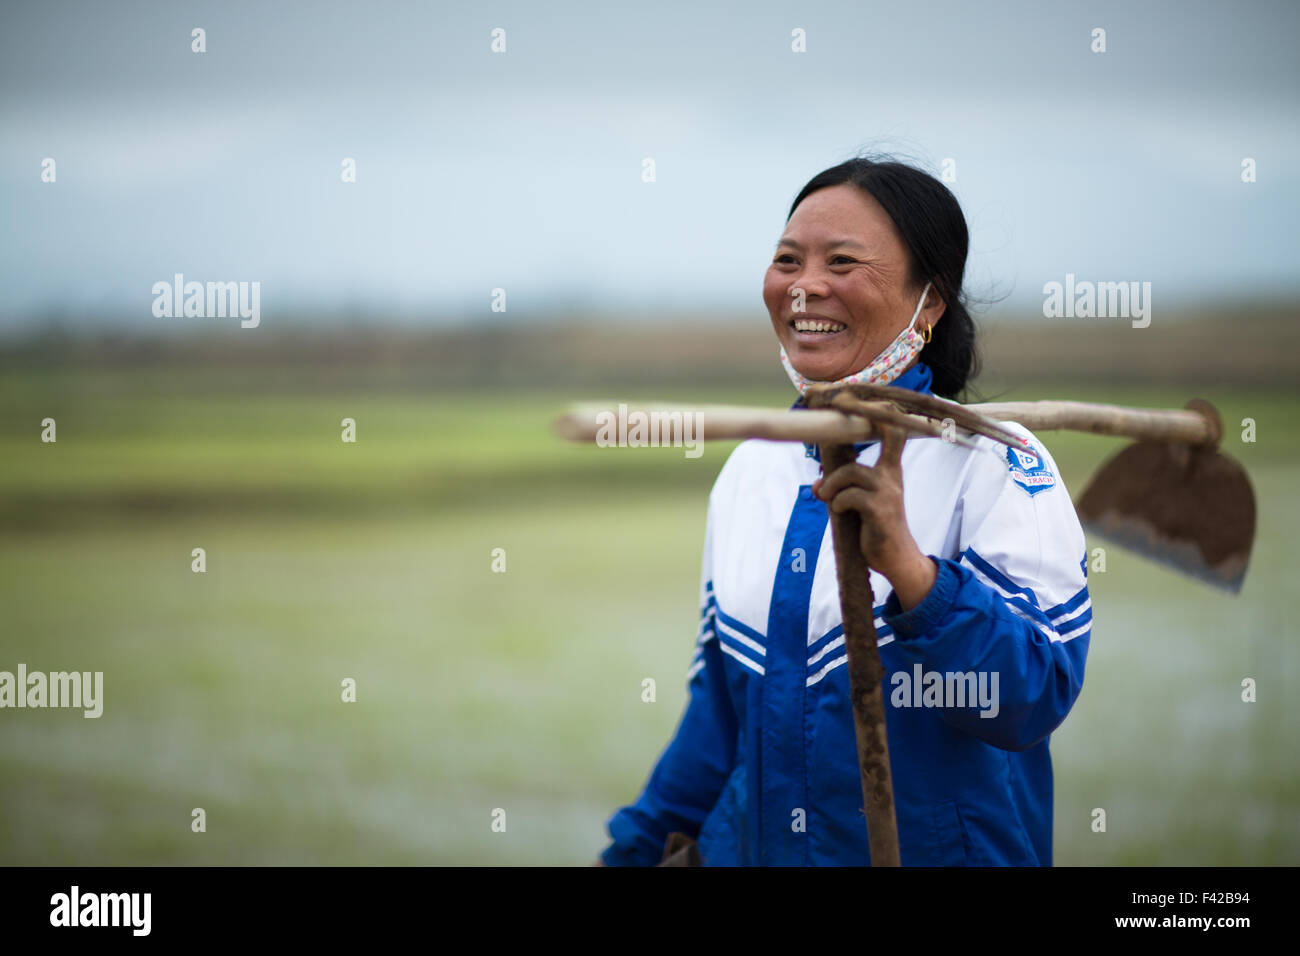 a woman ploughing a rice paddy nr Phong Nha, Quảng Bình Province, Vietnam Stock Photo